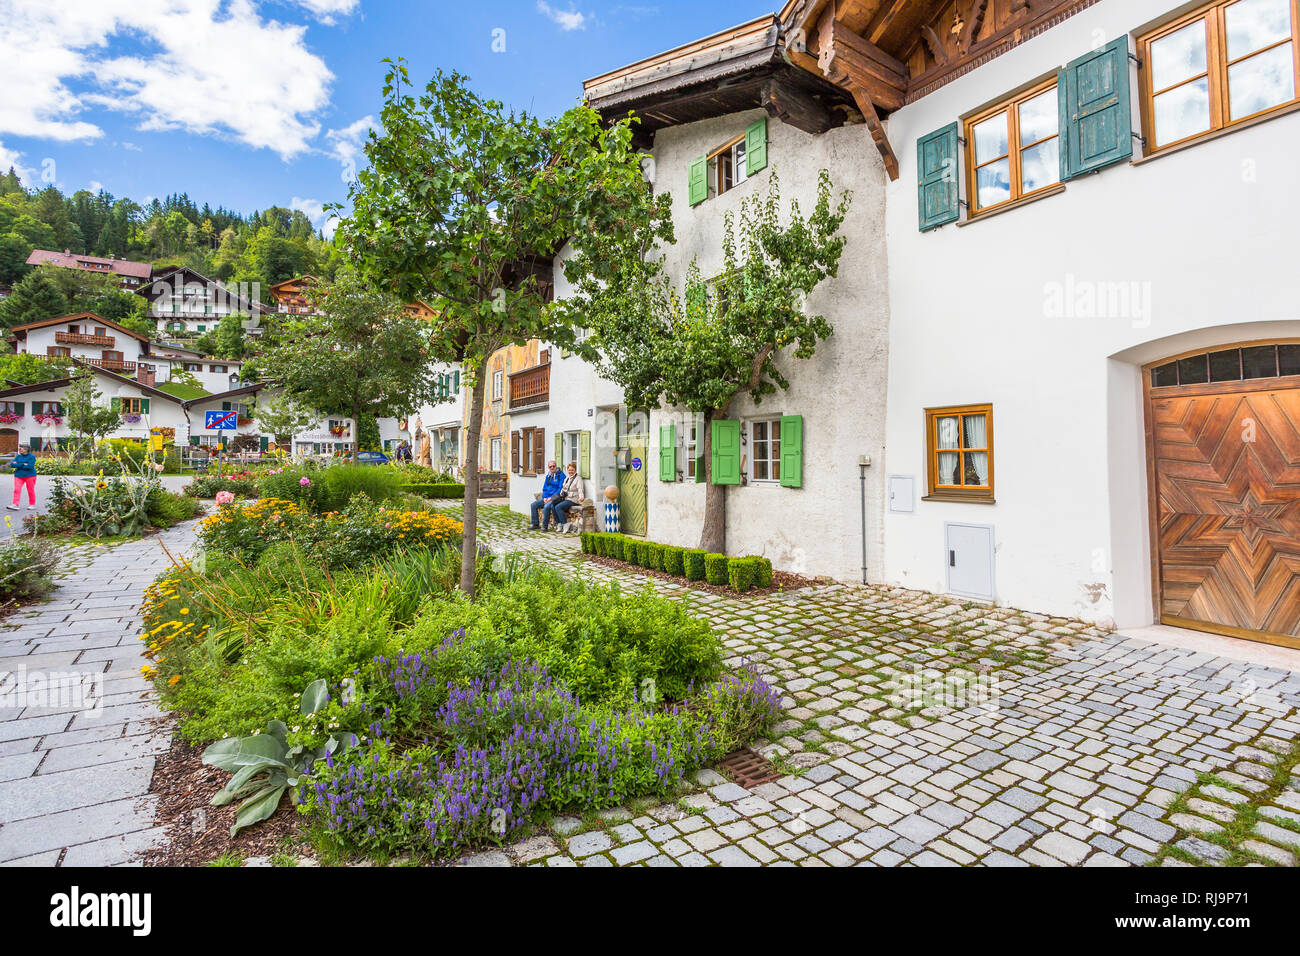 Hausfassaden mit Lüftlmalerei, Mittenwald, Werdenfelser Land, Oberbayern, Bayern, Deutschland, Europa Foto Stock